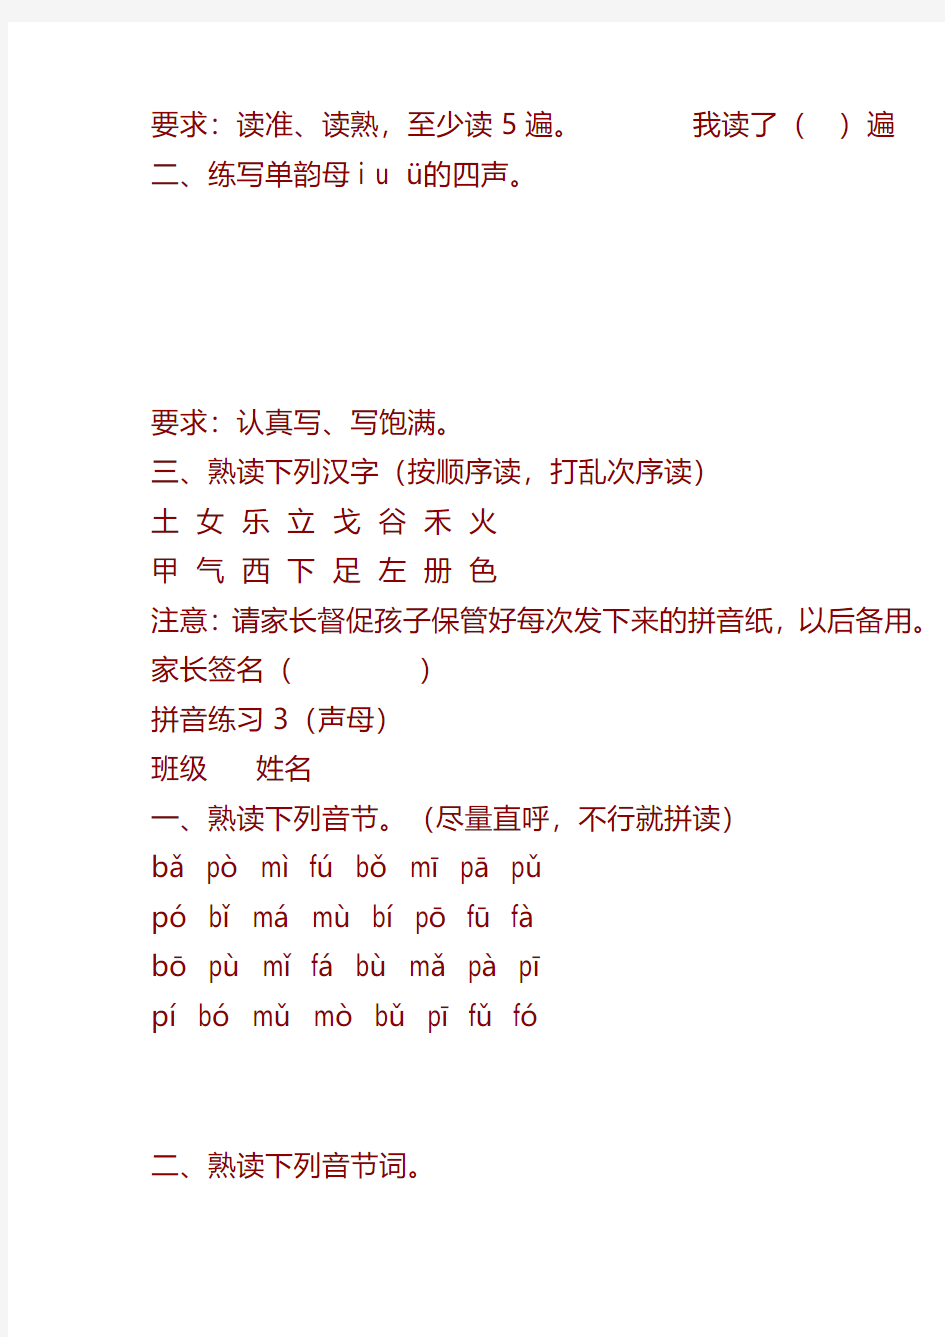 新人教版一年级上册语文全册汉语拼音练习题大全(家庭版)